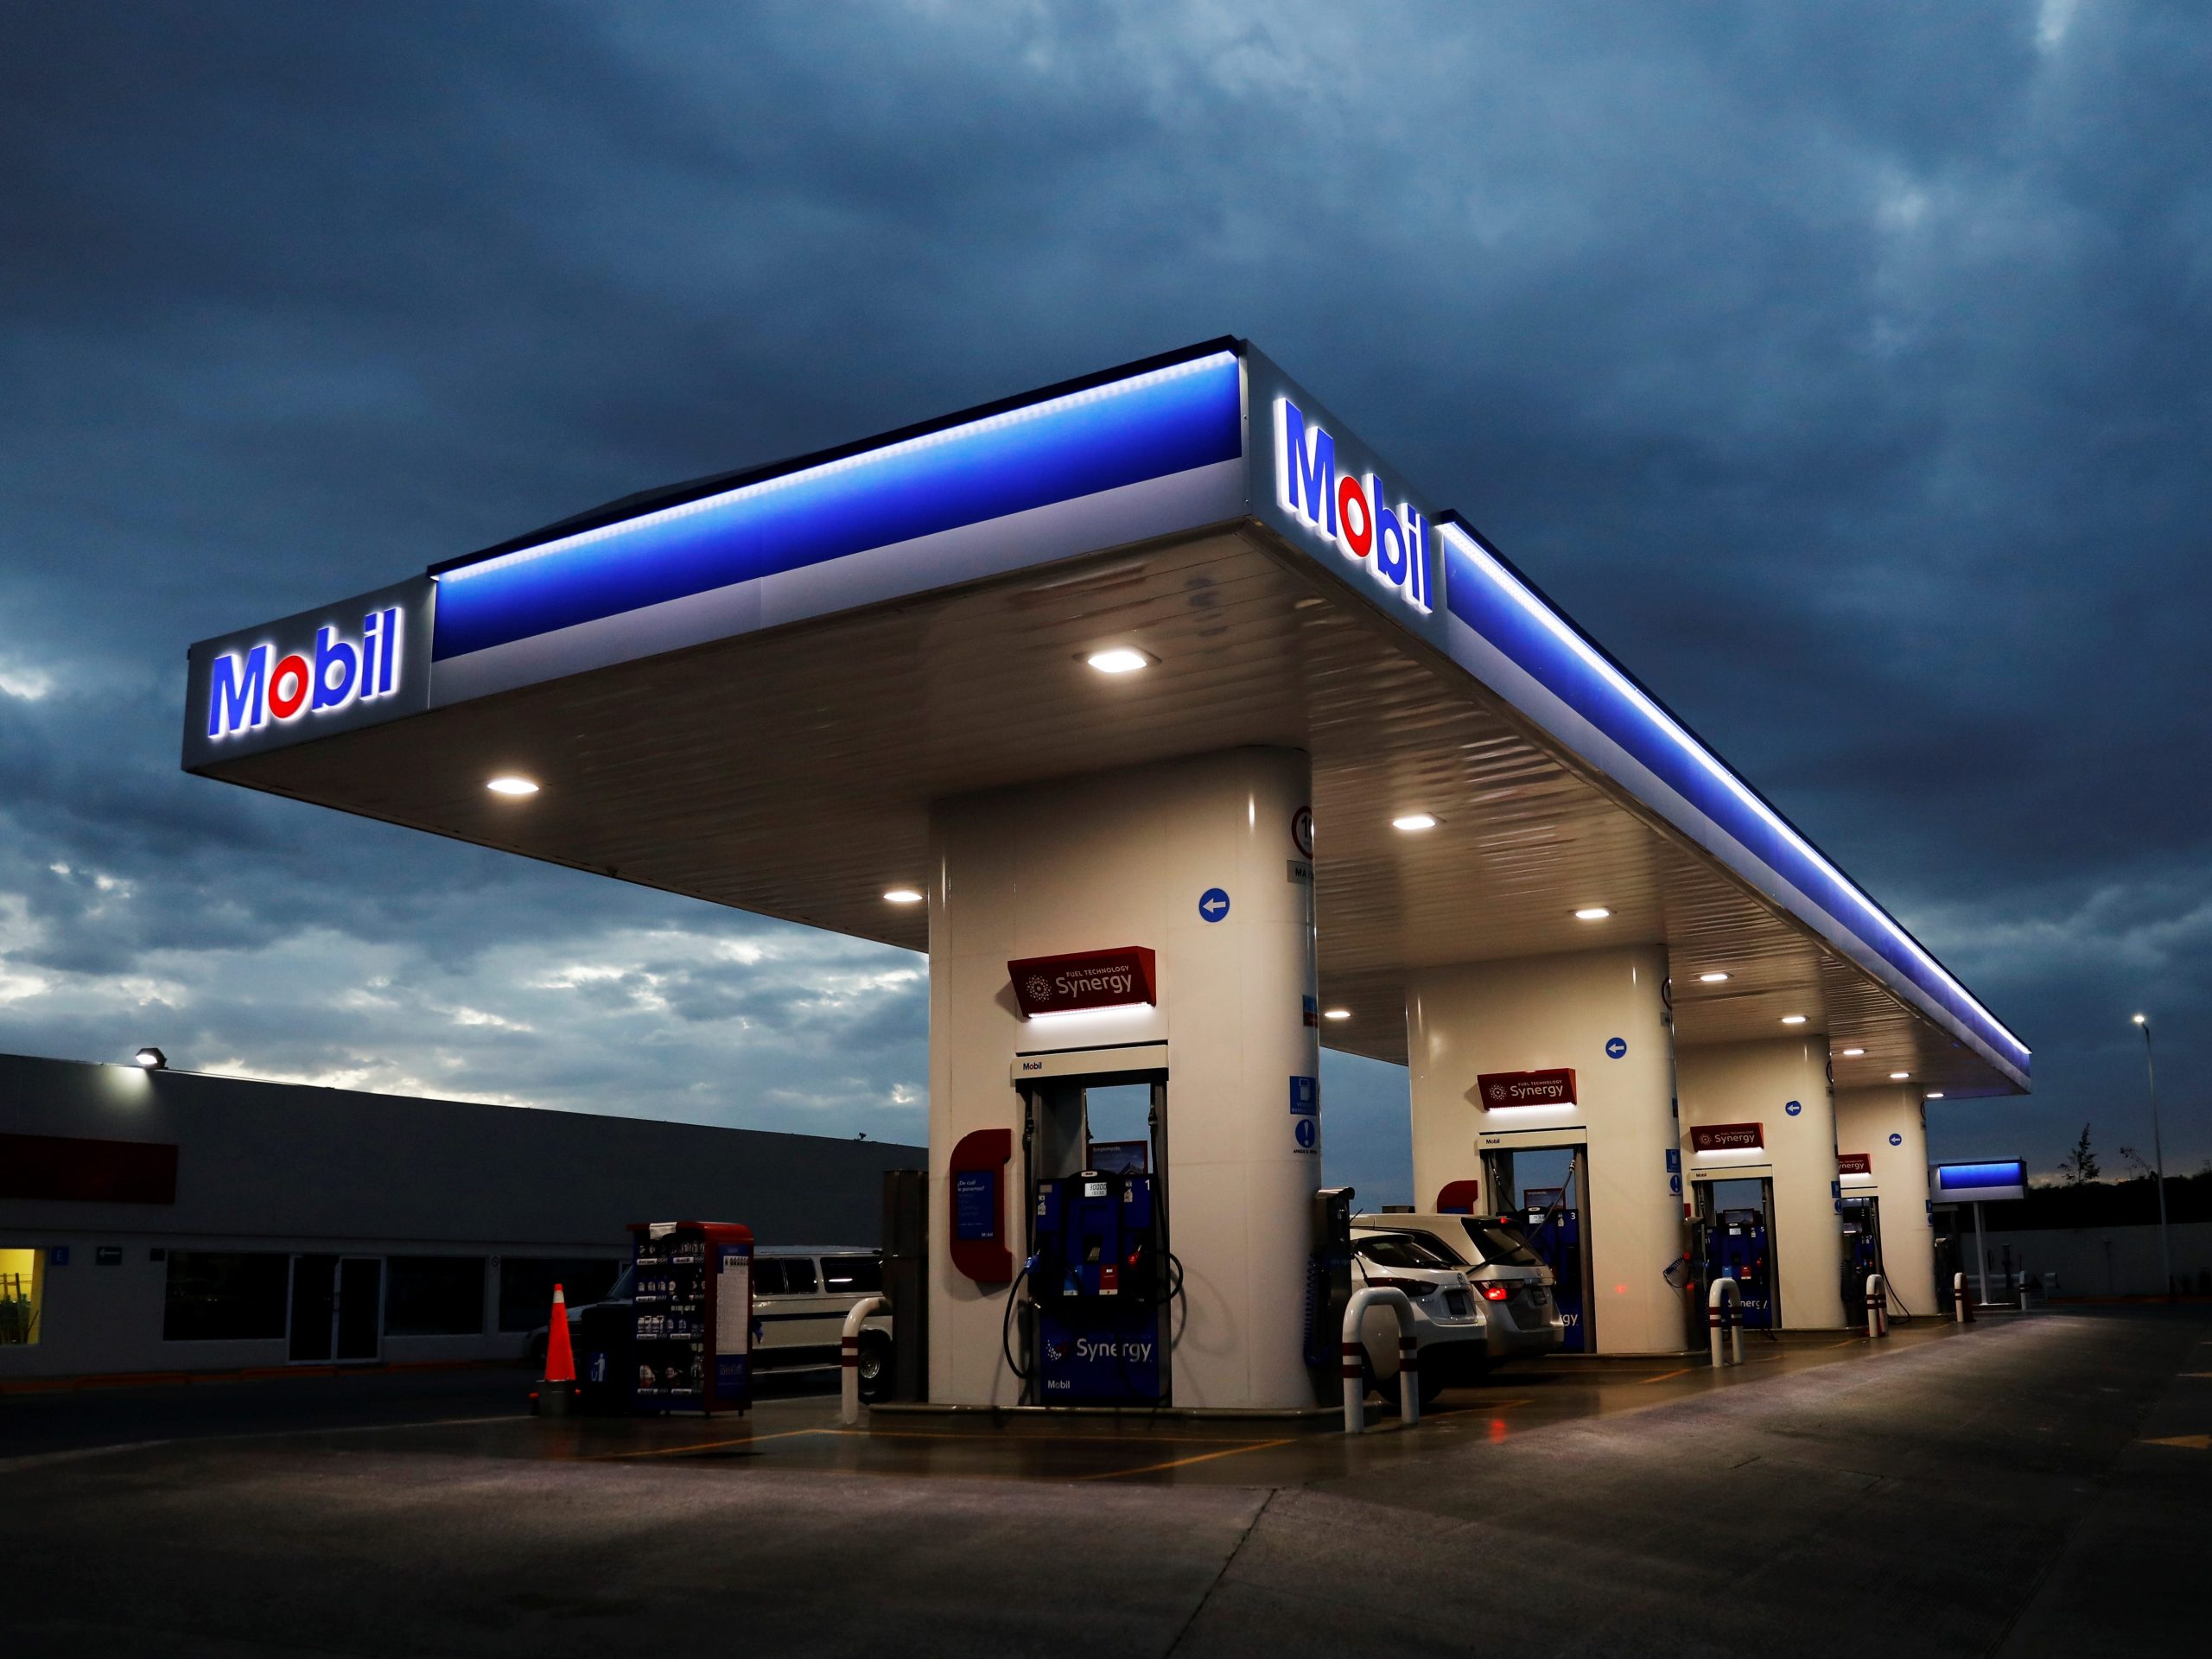 Exxon Mobil gas station